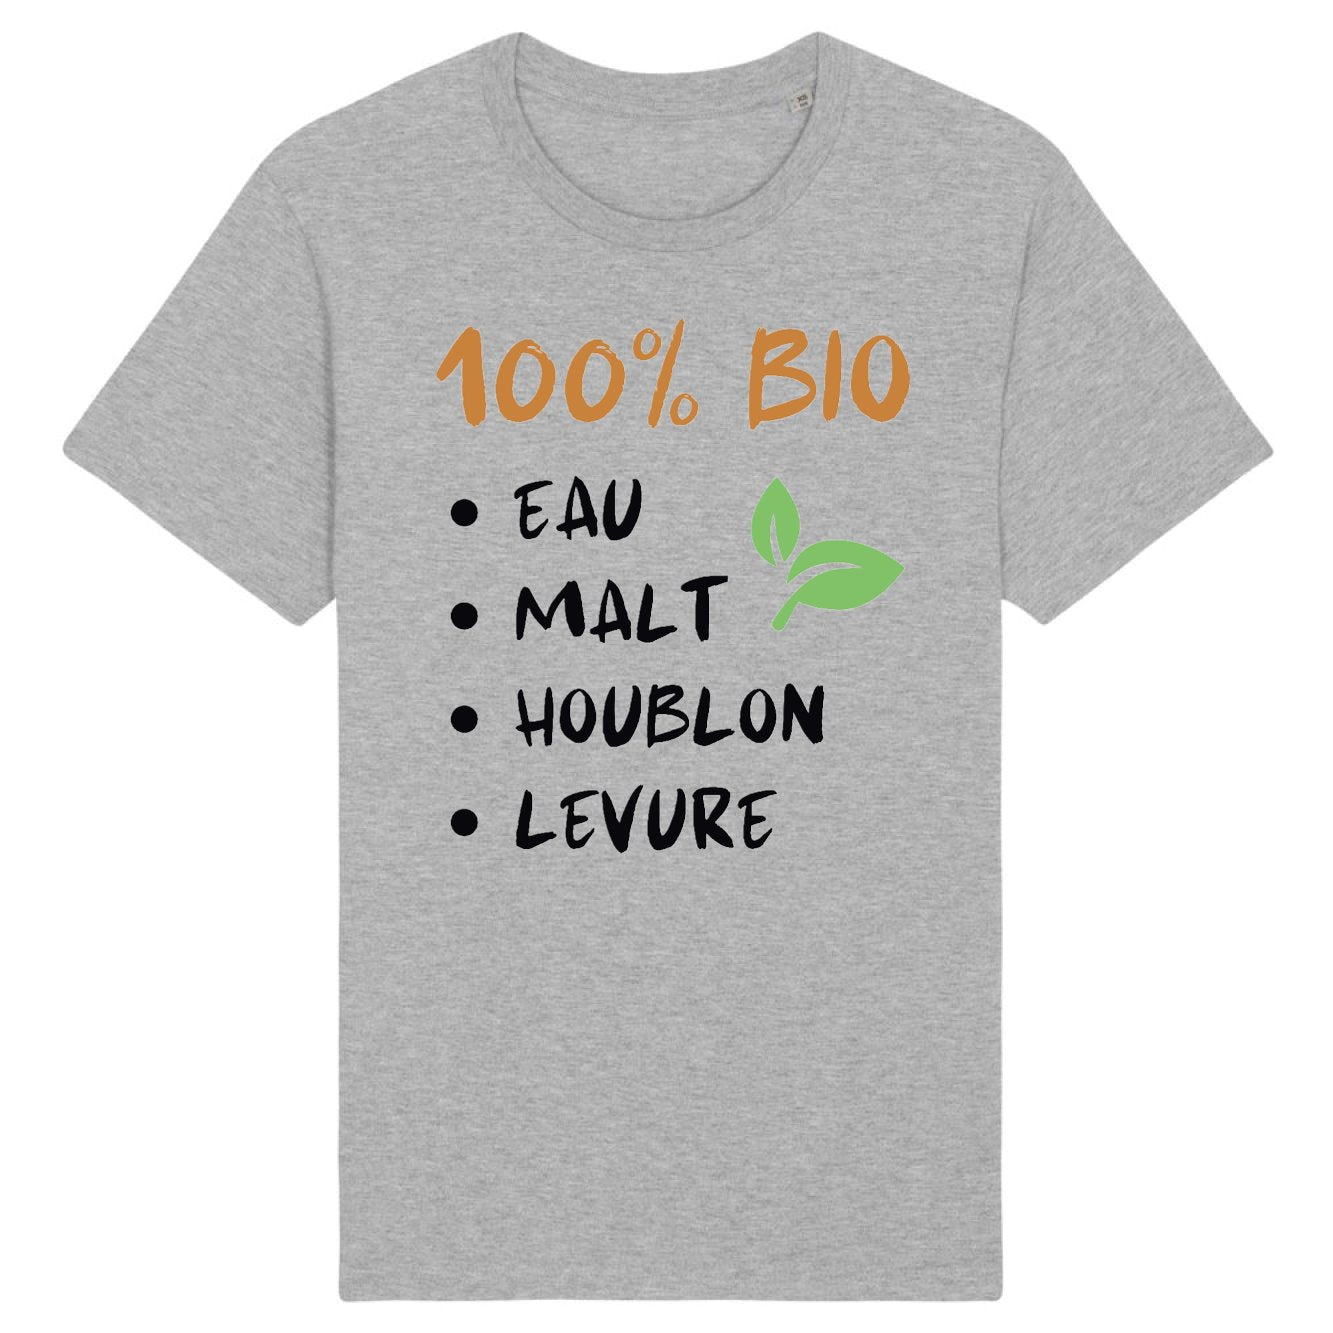 T-Shirt Homme 100% bio eau malt houblon levure 